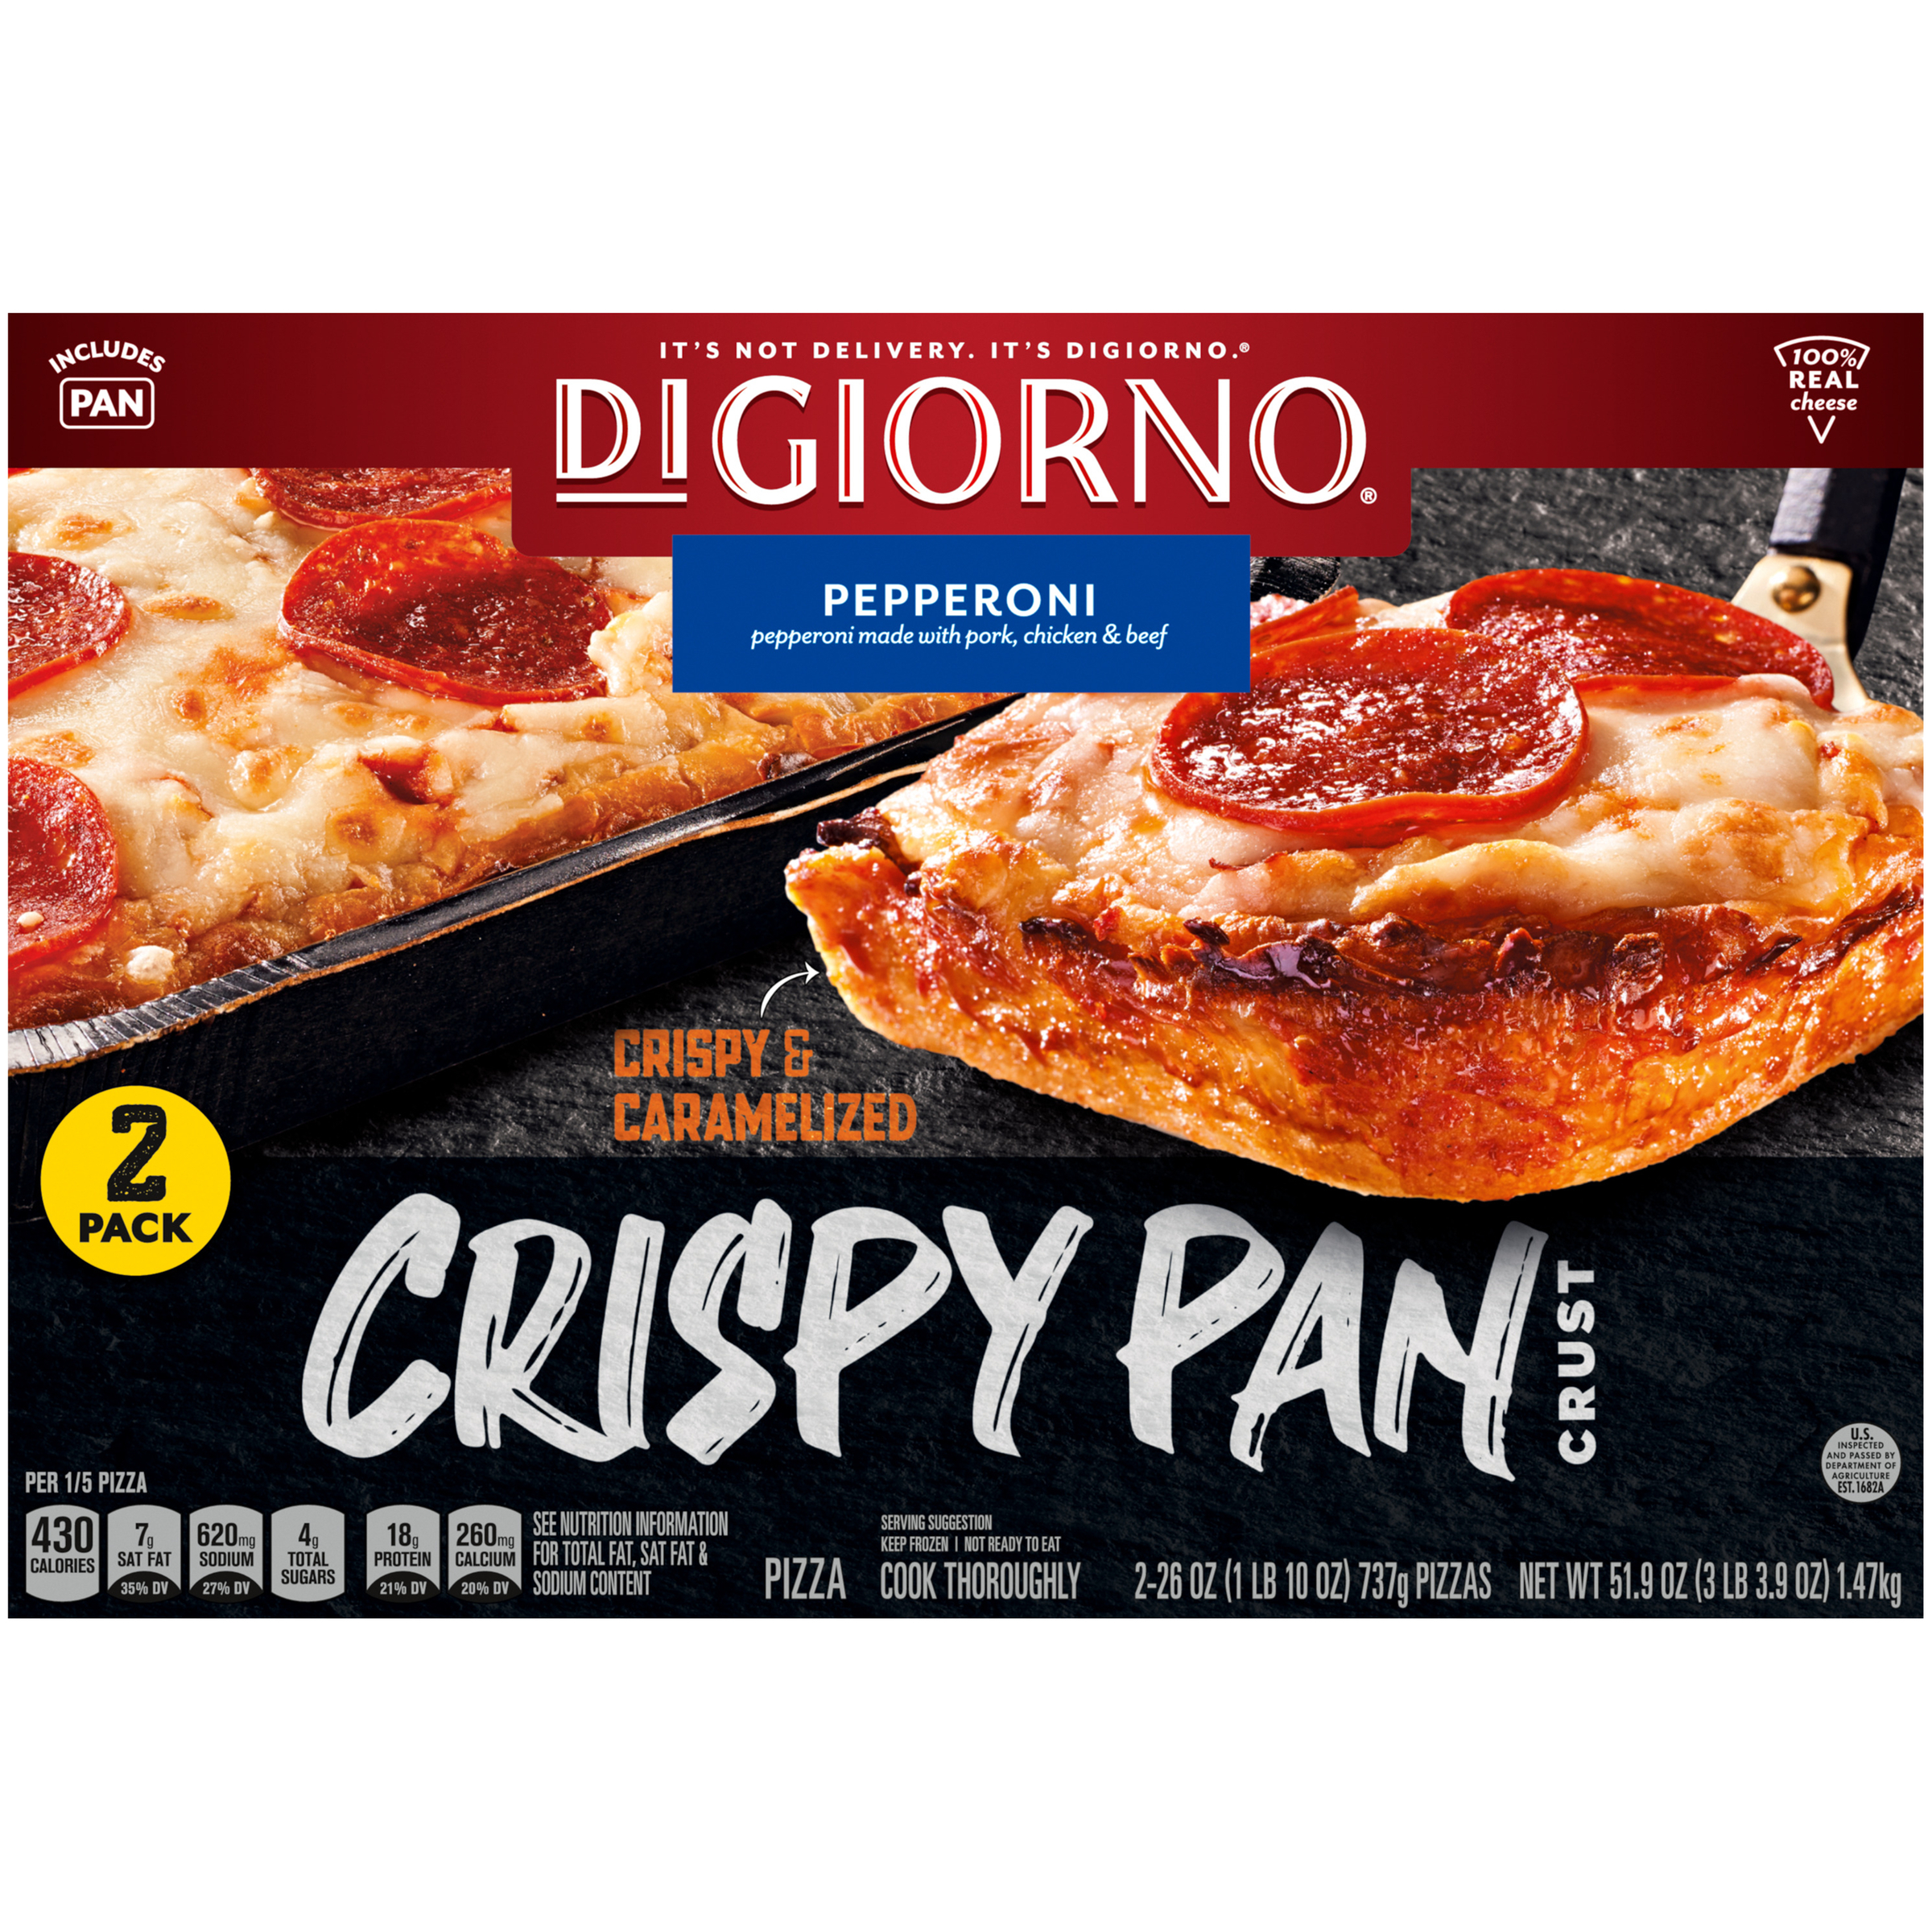 DIGIORNO Crispy Pan Crust Pepperoni Pizza 8 units per case 26.0 oz